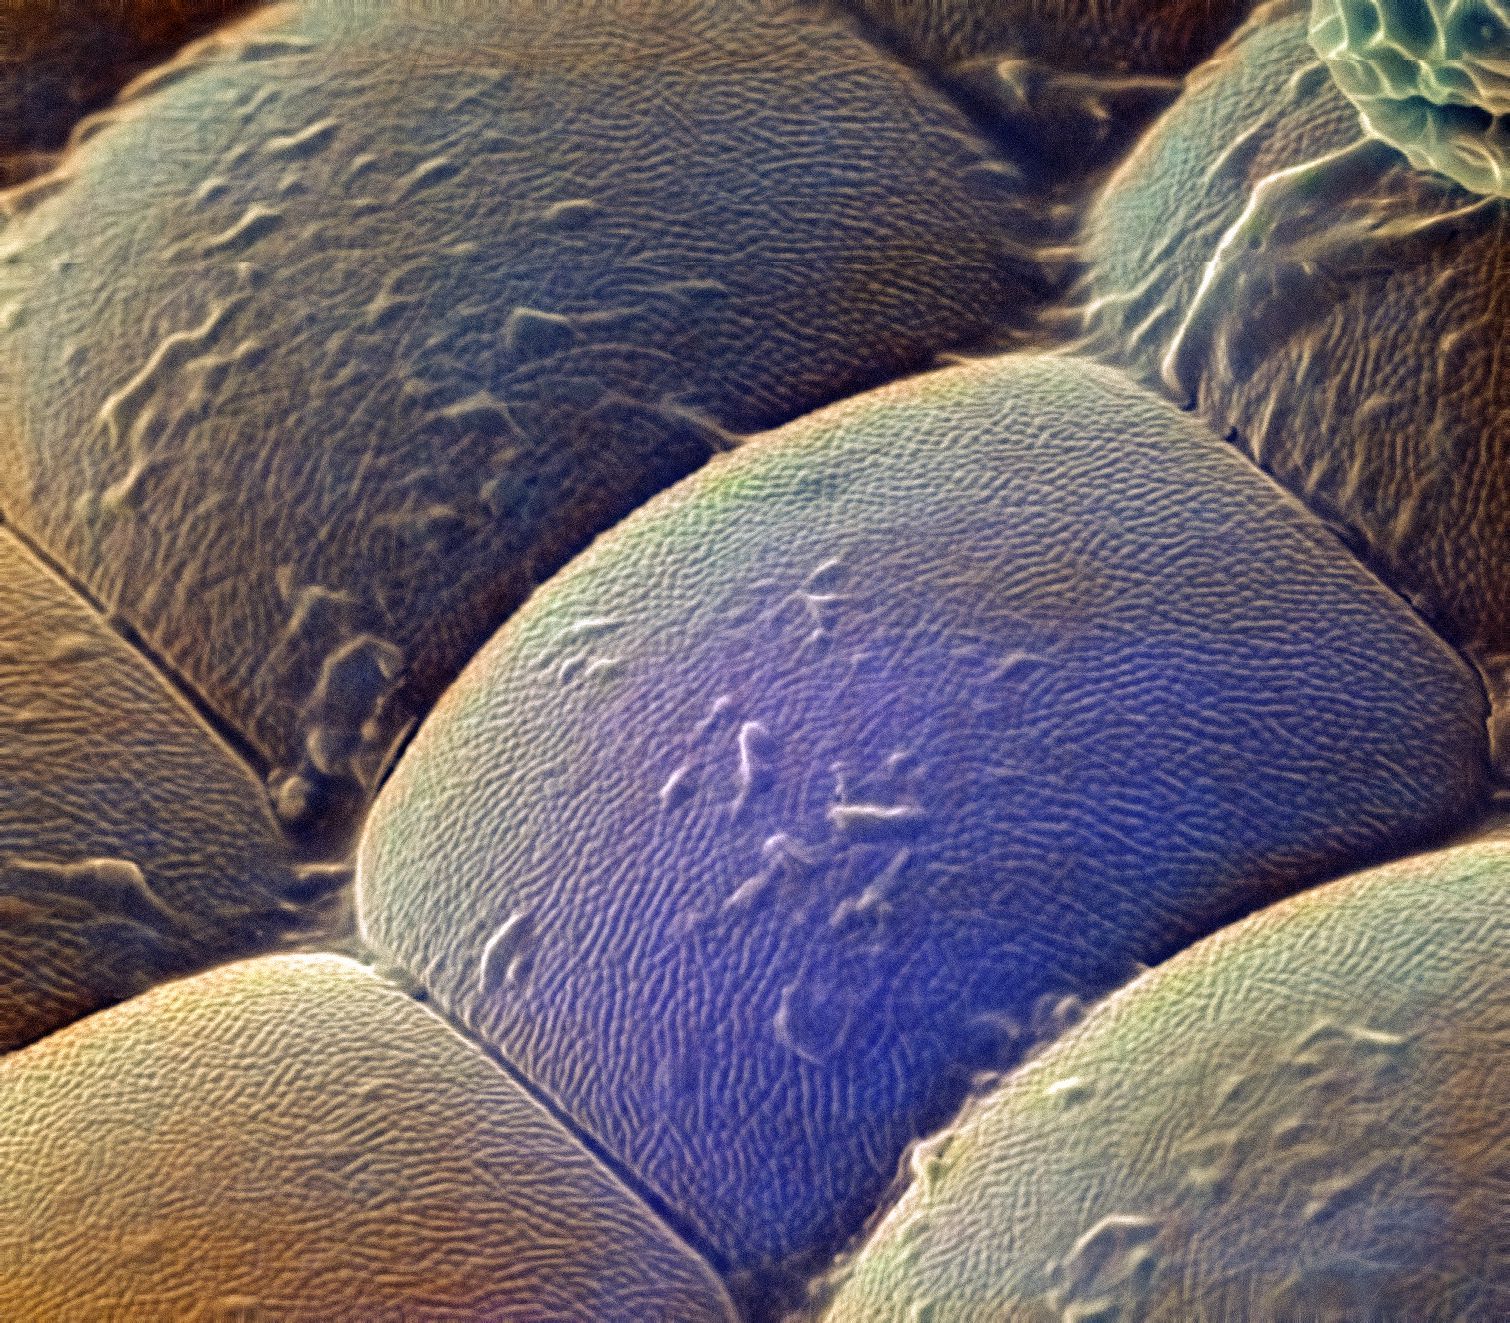 Мошка астраханская фото под микроскопом